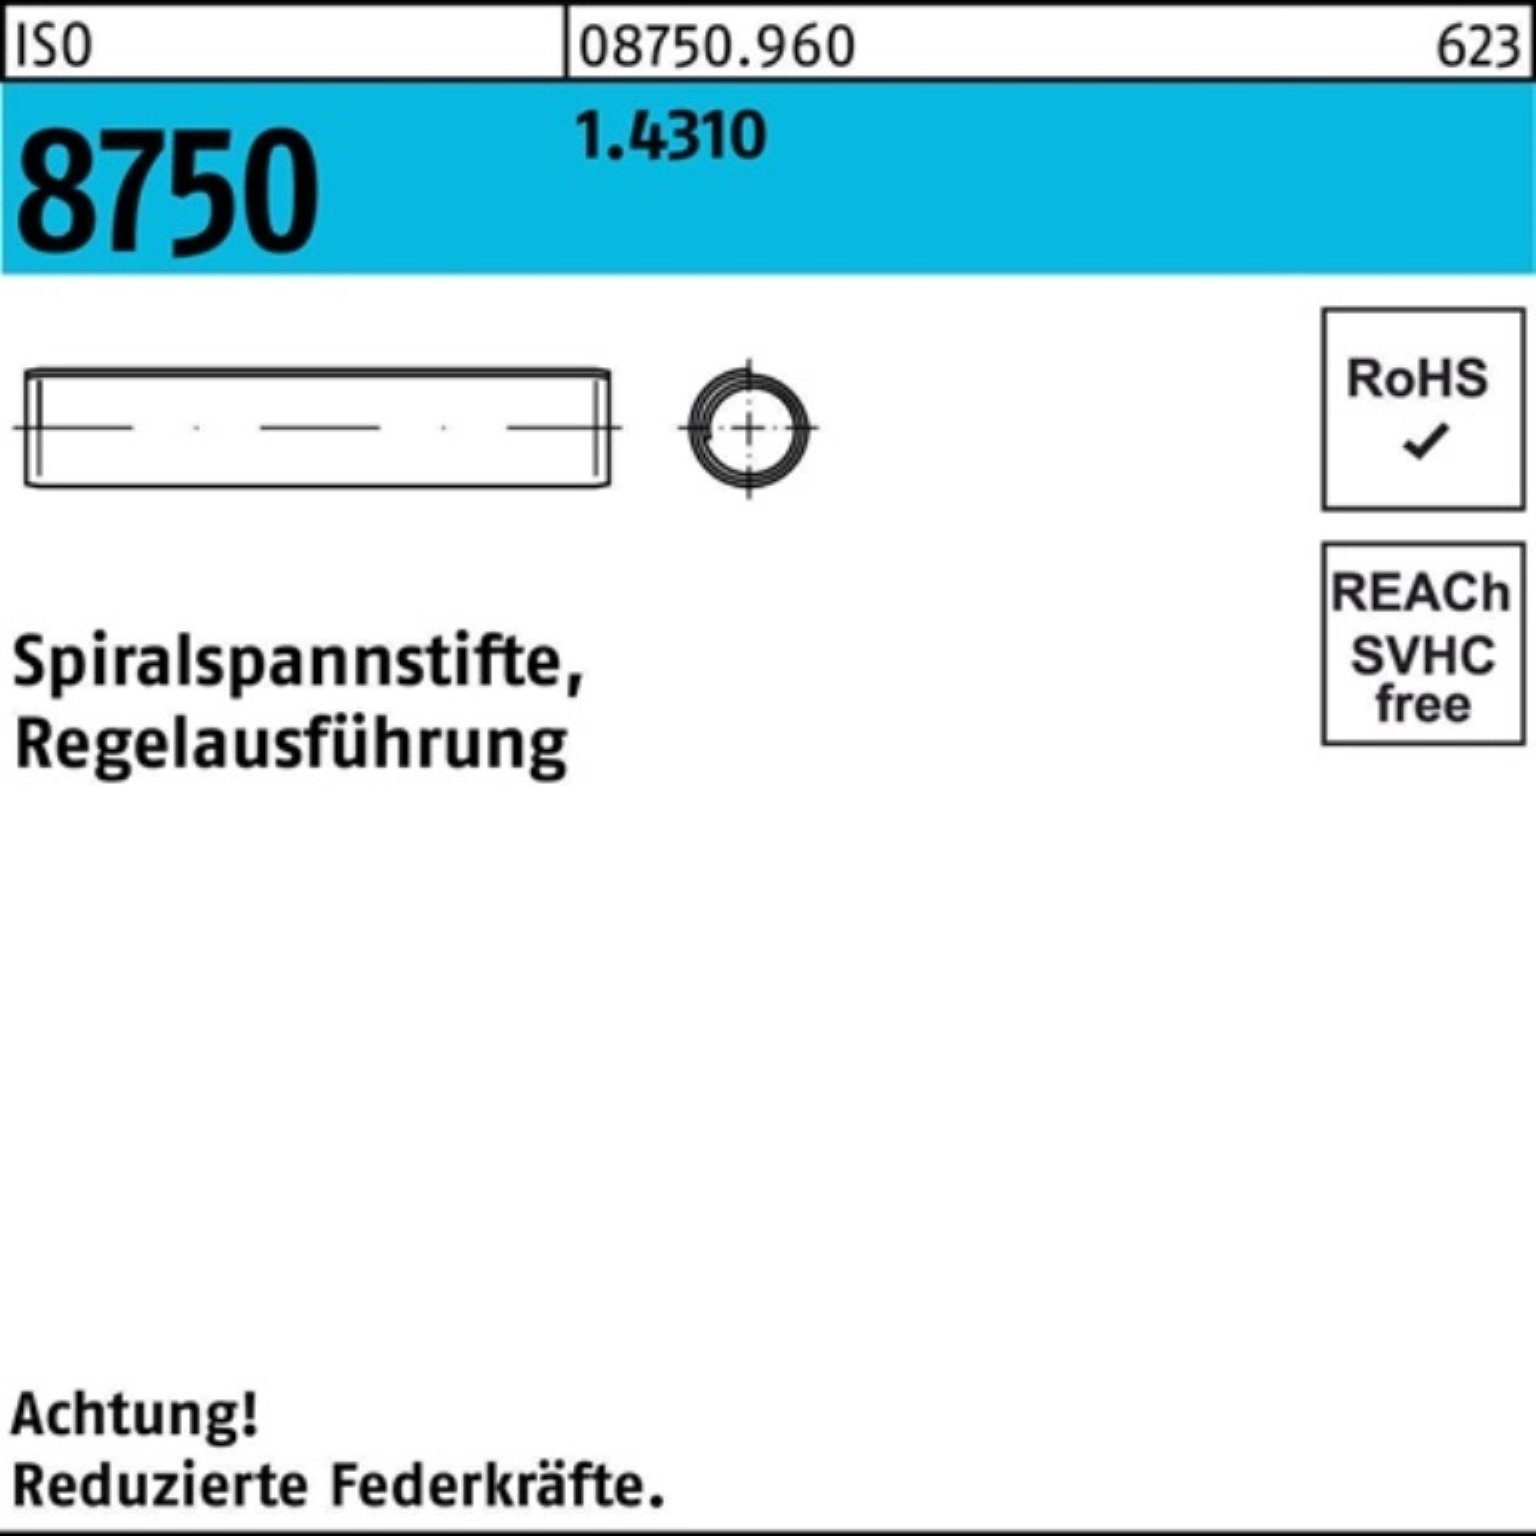 Spiralspannstift 500 500er 1.4310 Stüc Pack 8750 28 5x Reyher Spannstift Regelausf. ISO